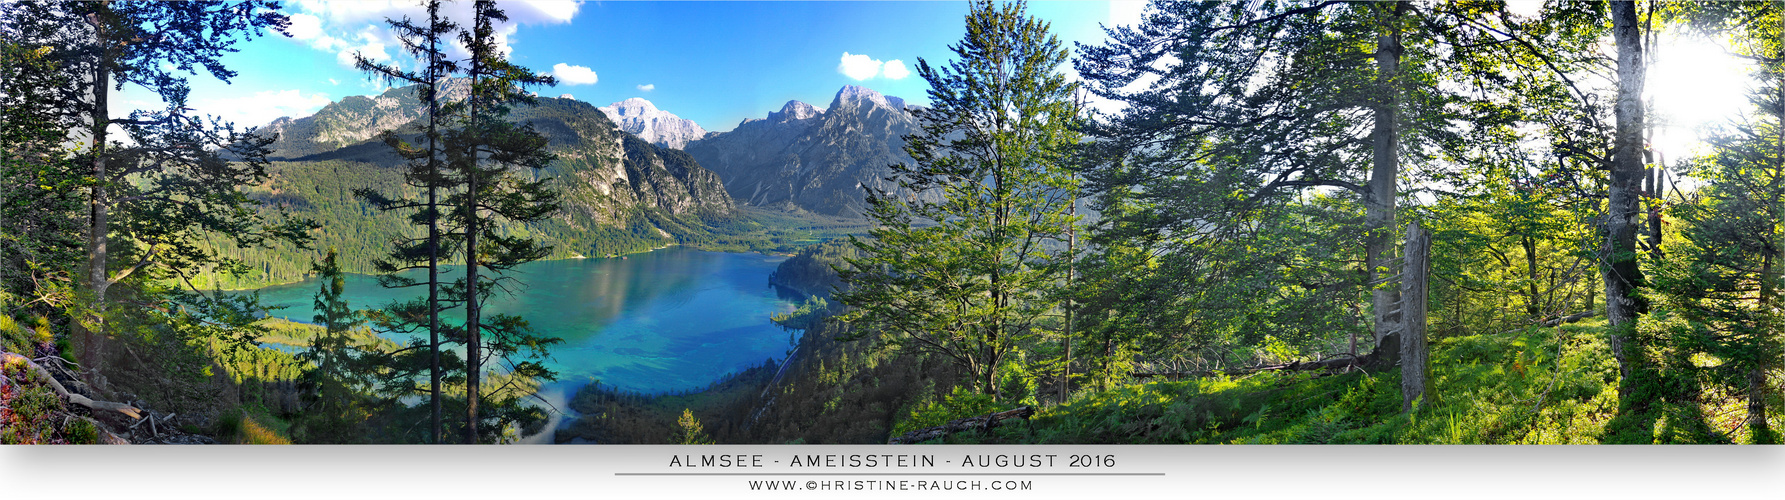 Ameisstein - August 2016